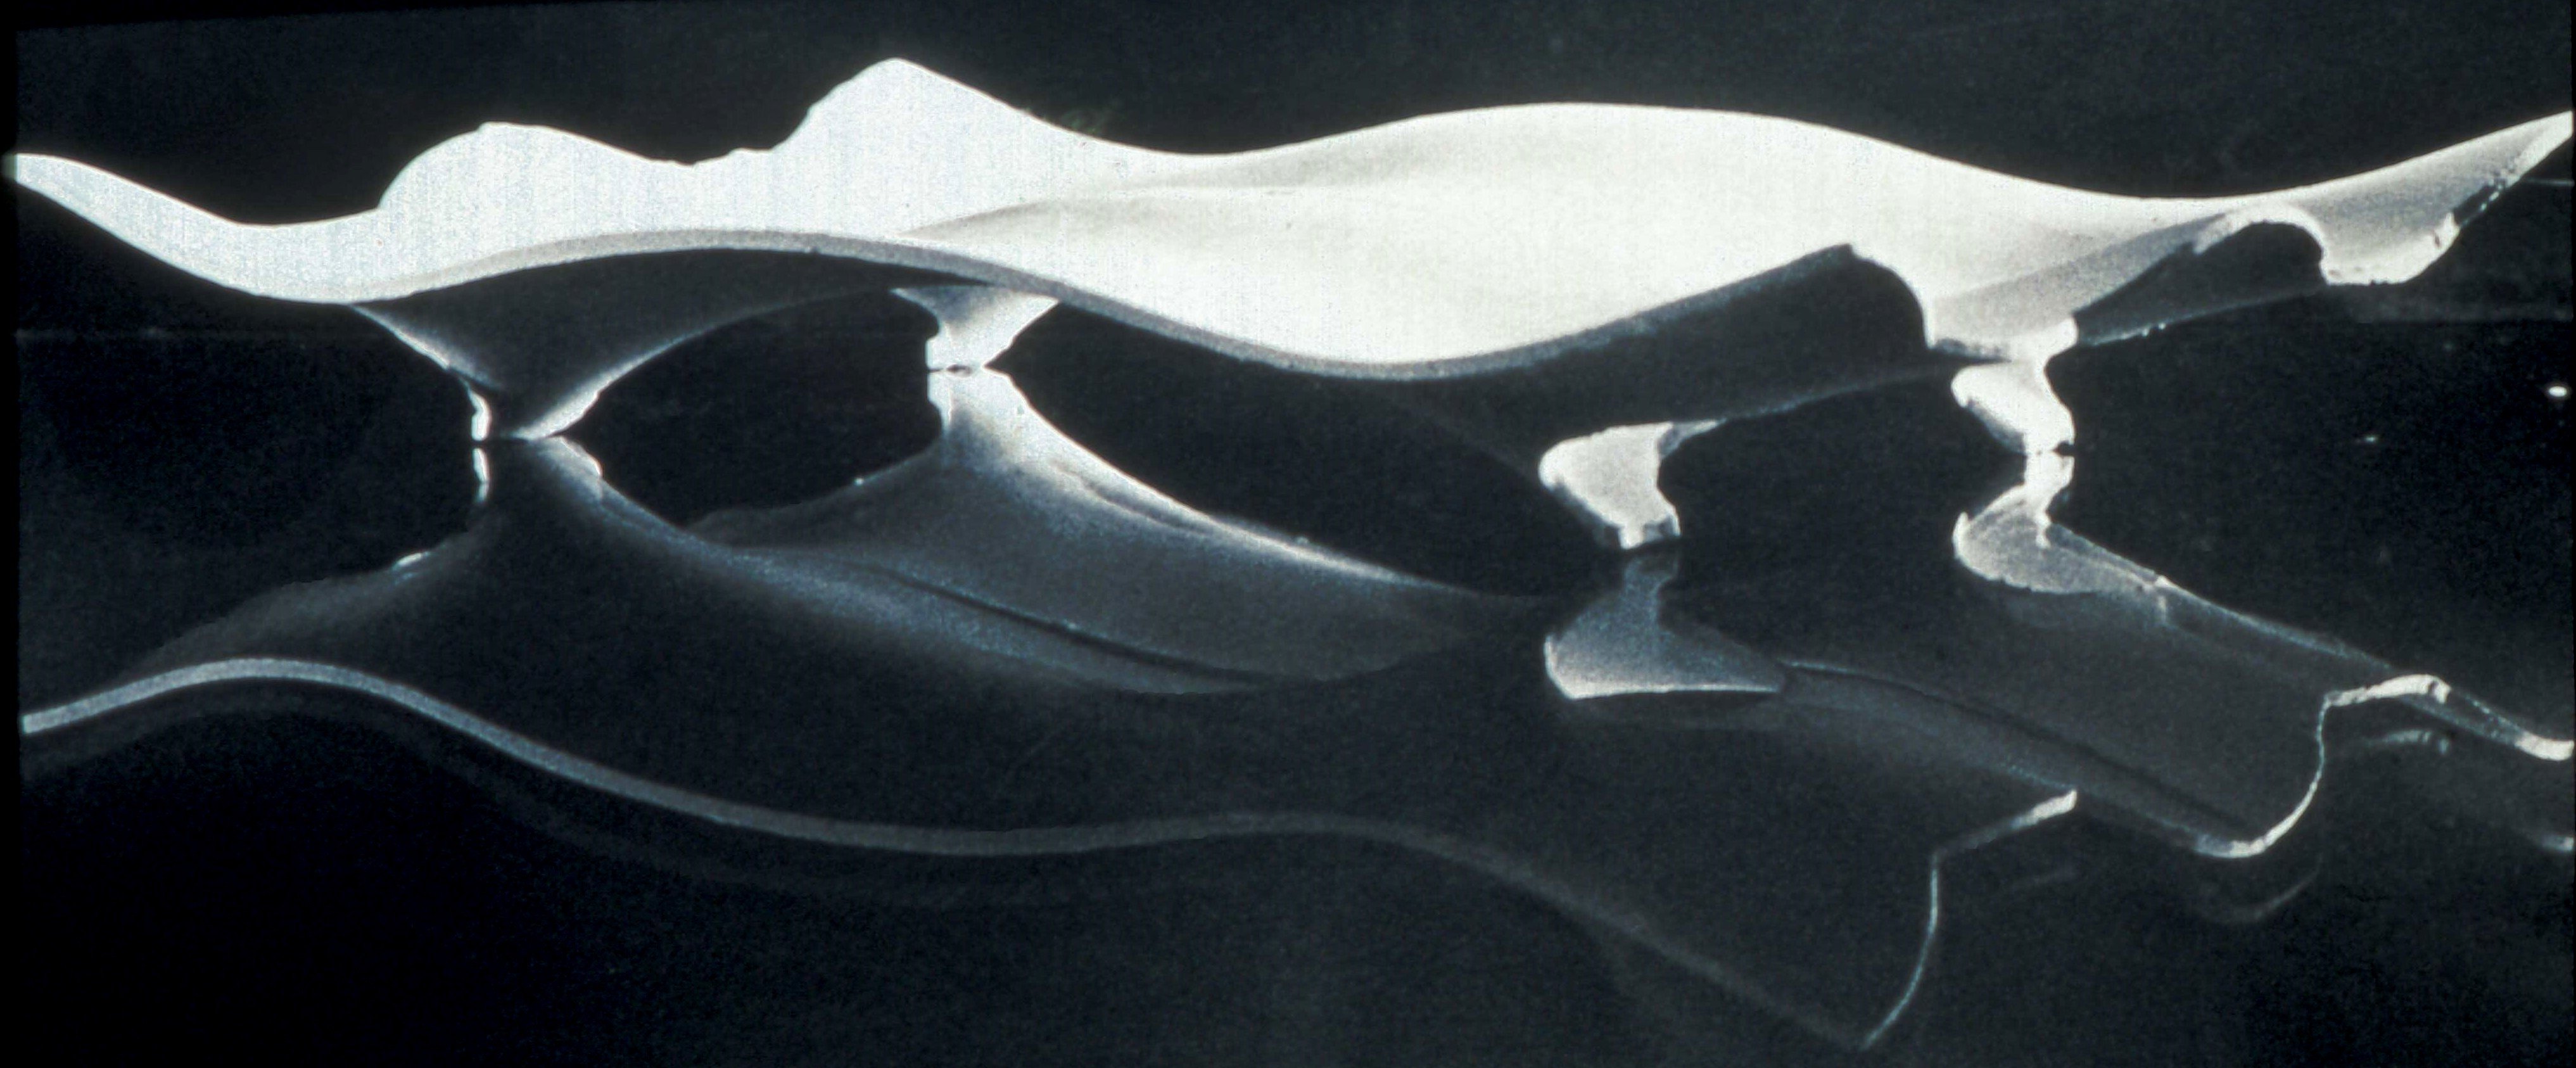 Sergio Musmeci, Mercati Generali. Fotografia del modello, s.d., Fotografia b/n, 15X23 cm, courtesy Fondazione MAXXI, esposta nella mostra STRUTTURE ROMANE. MONTUORI, MUSMECI, NERVI - MAXXI 17 aprile – 5 ottobre 2014